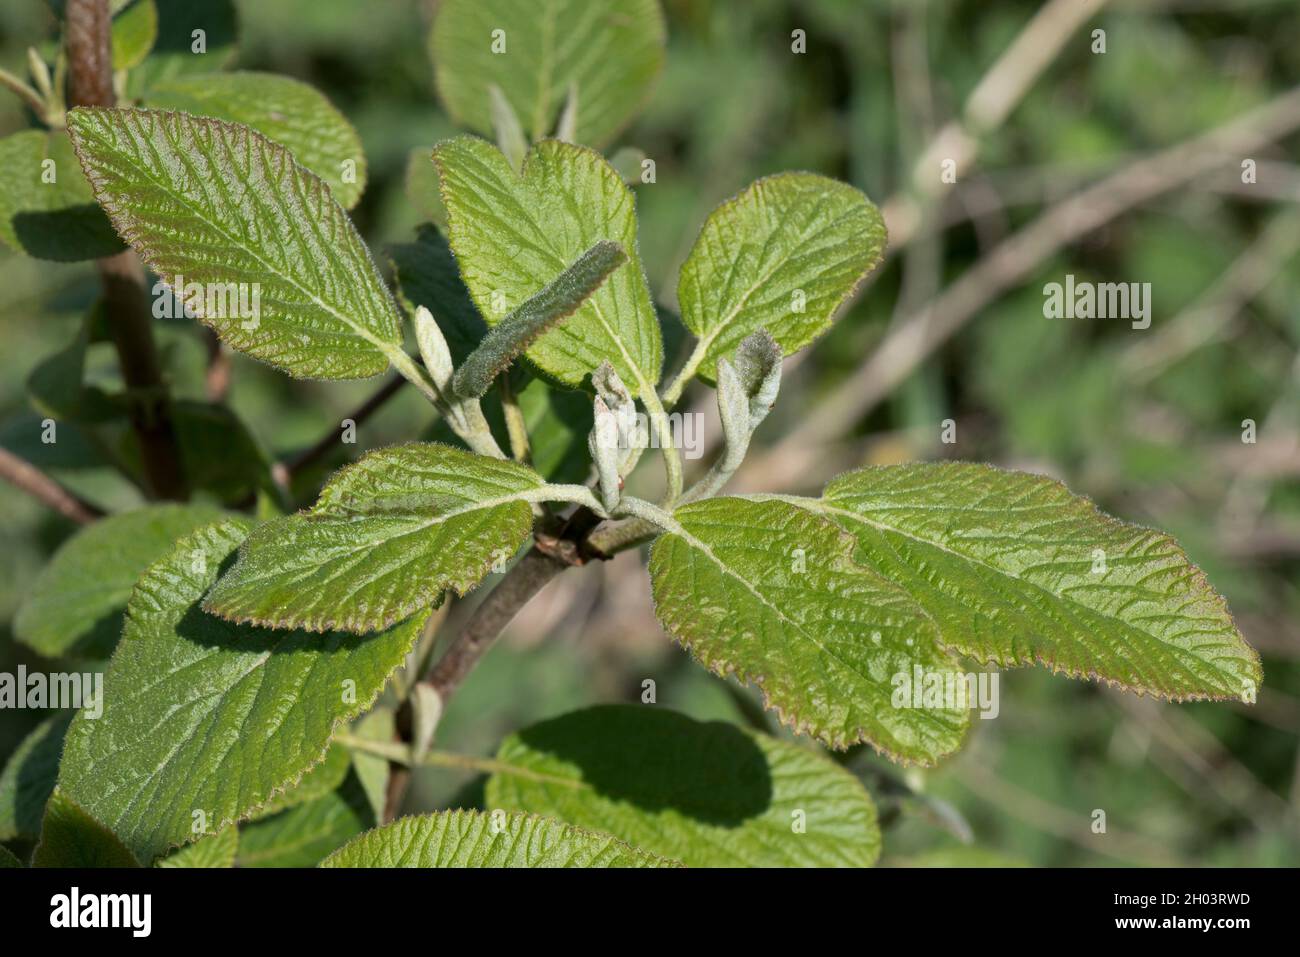 Junge Frühlingsblätter von Wanderbaum oder Wanderbaum (Viburnum lantanum) entwickeln sich im frühen Mai, in der Grafschaft Bekshire Stockfoto